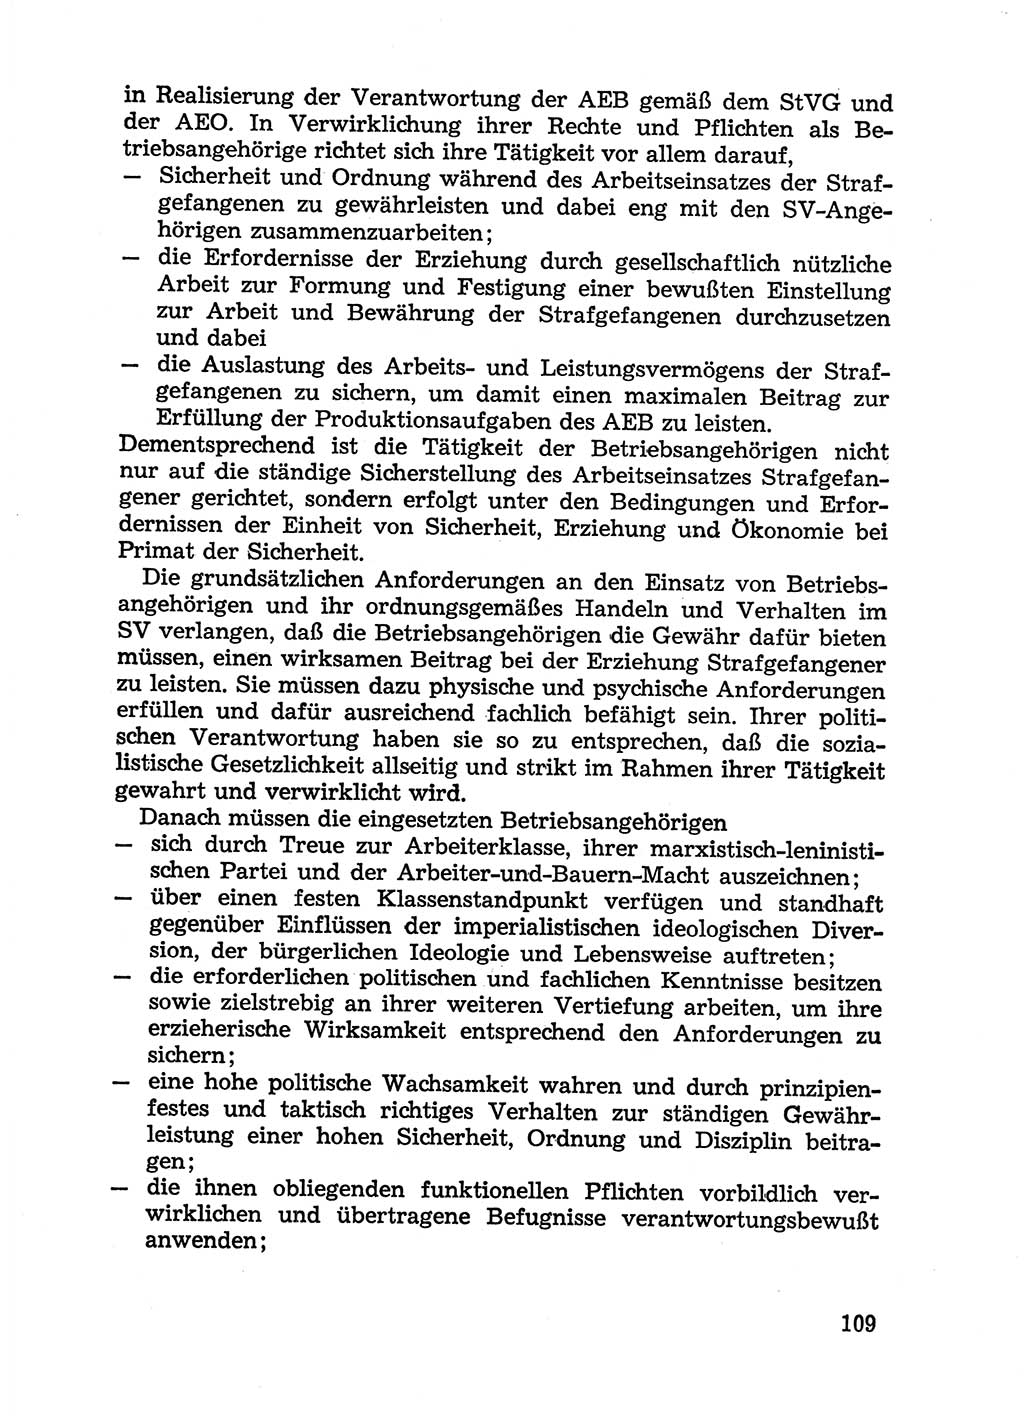 Handbuch für Betriebsangehörige, Abteilung Strafvollzug (SV) [Ministerium des Innern (MdI) Deutsche Demokratische Republik (DDR)] 1981, Seite 109 (Hb. BA Abt. SV MdI DDR 1981, S. 109)